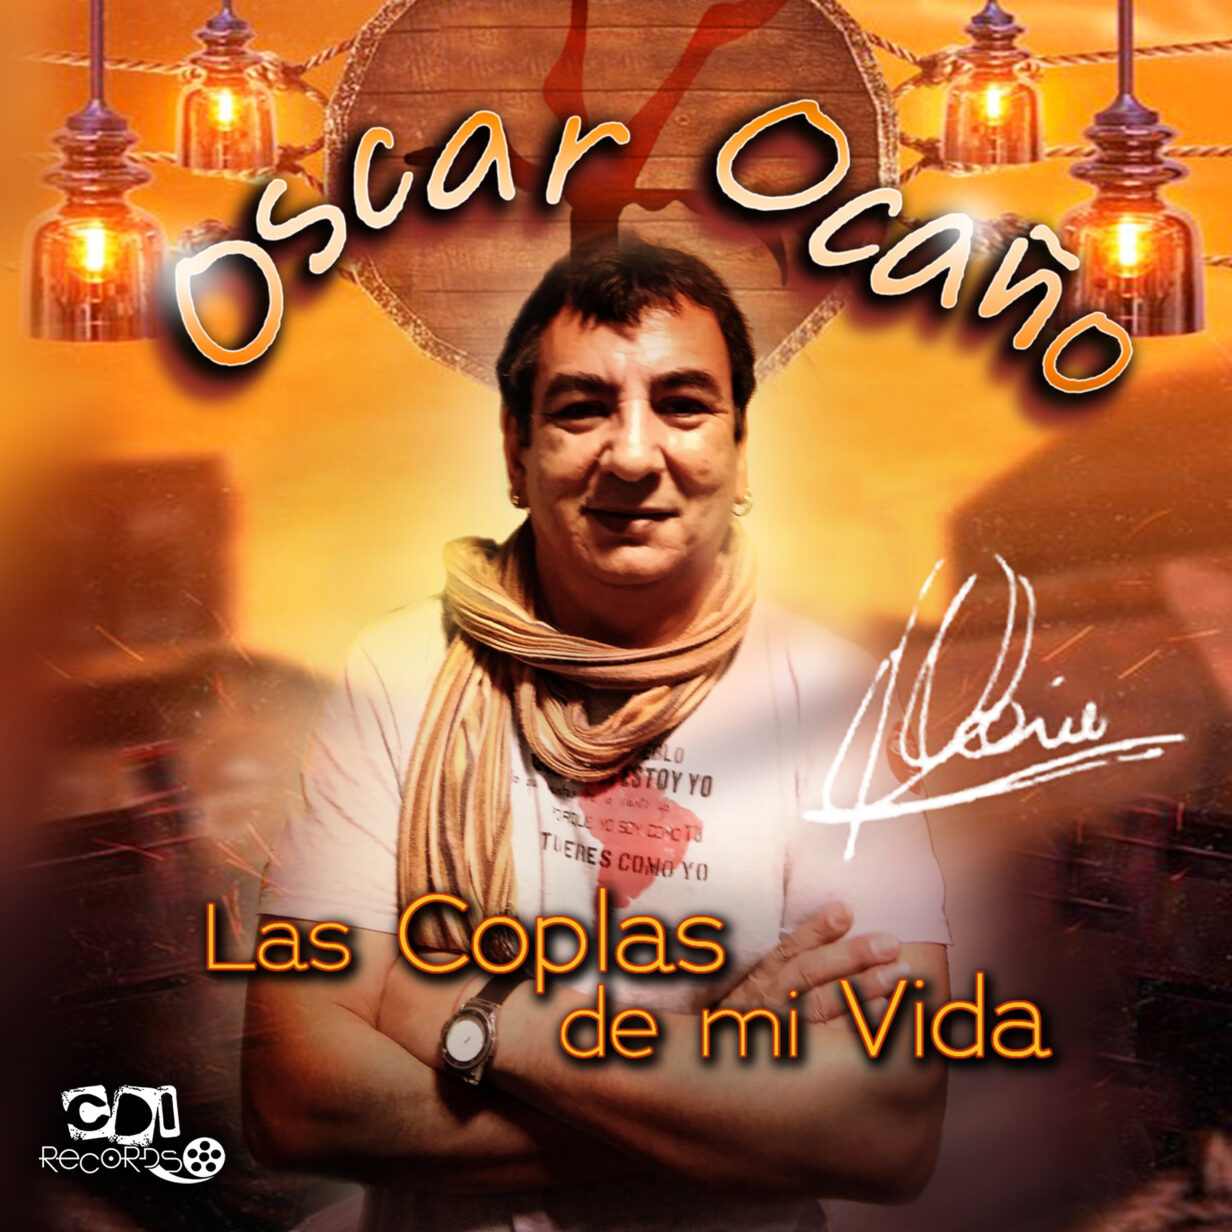 Coplas de mi vida Oscar Ocaño